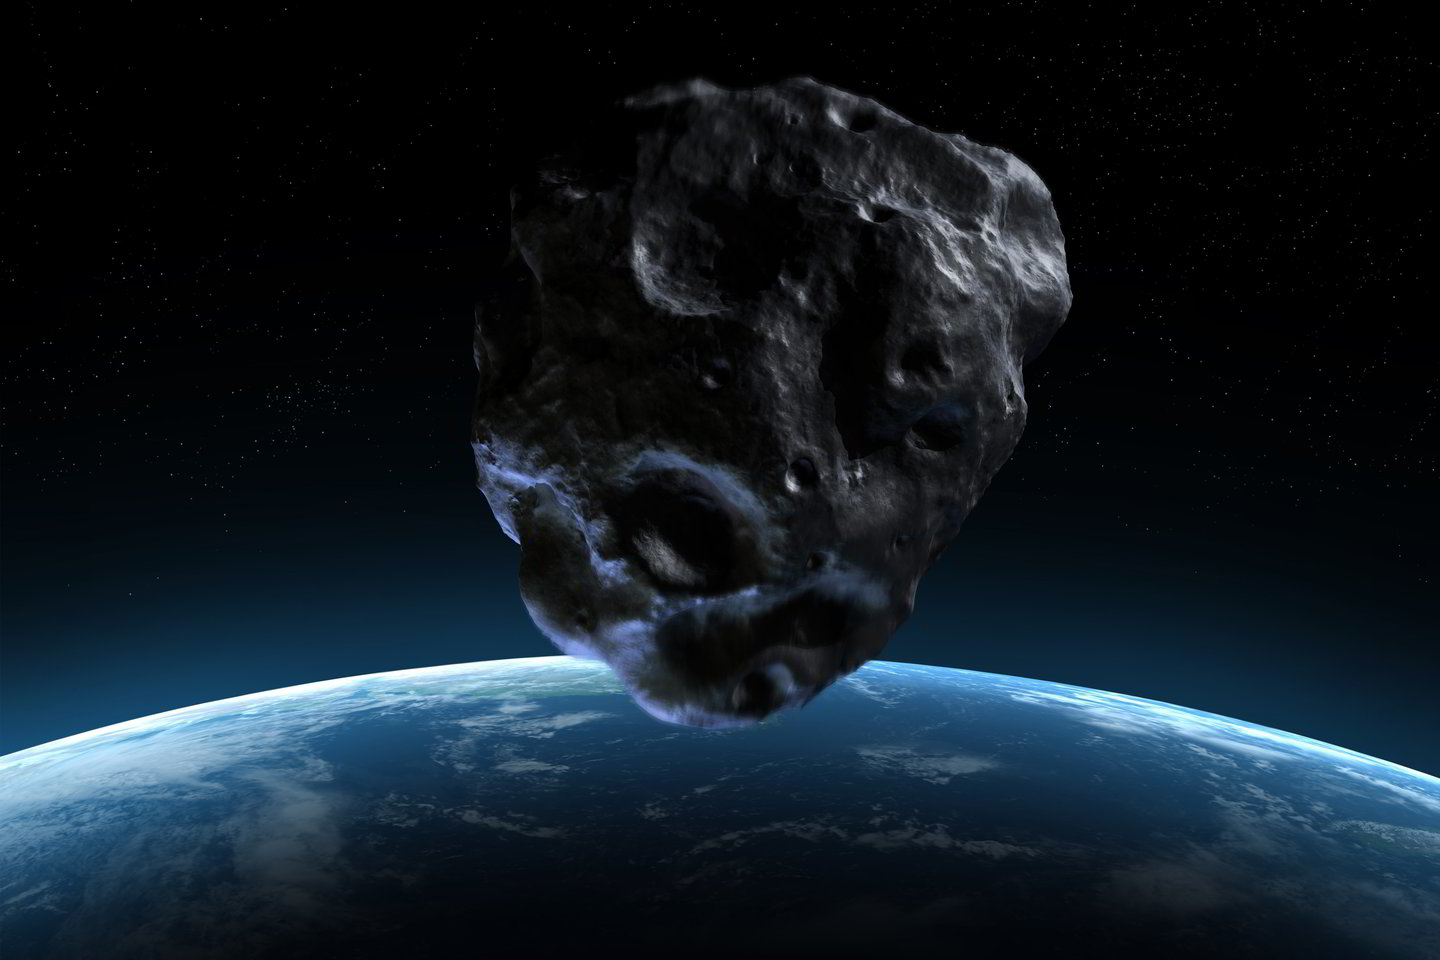  Asteroidas 2018 GE3 prisigretino nejaukiai arti. Skriedamas ~106 000 km/h greičiu, asteroidas nuo Žemės buvo per pusę vidutinio atstumo tarp Žemės ir Mėnulio. Nors tai atrodo labai toli, kosminiais mastais tai šiurpinančiai arti. (asociatyvi iliustr.)<br> 123RF nuotr.